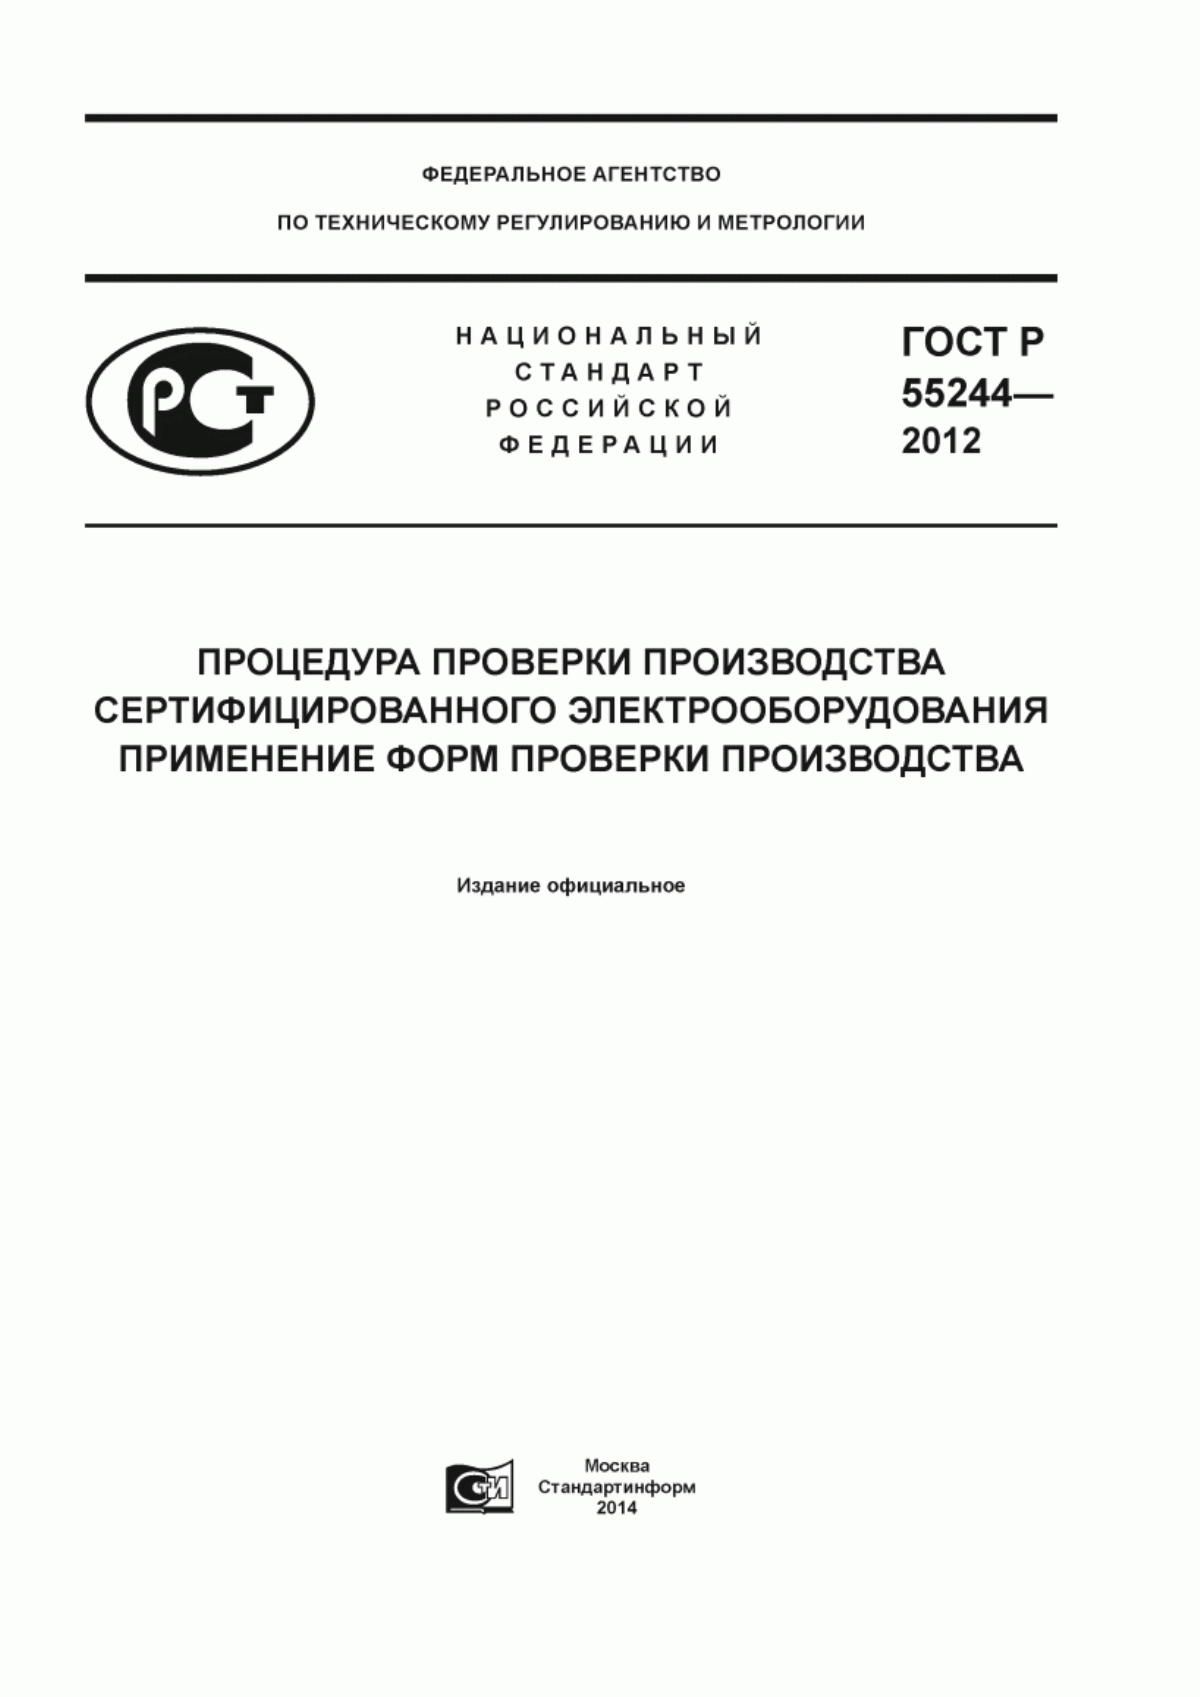 ГОСТ Р 55244-2012 Процедура проверки производства сертифицированного электрооборудования. Применение форм проверки производства